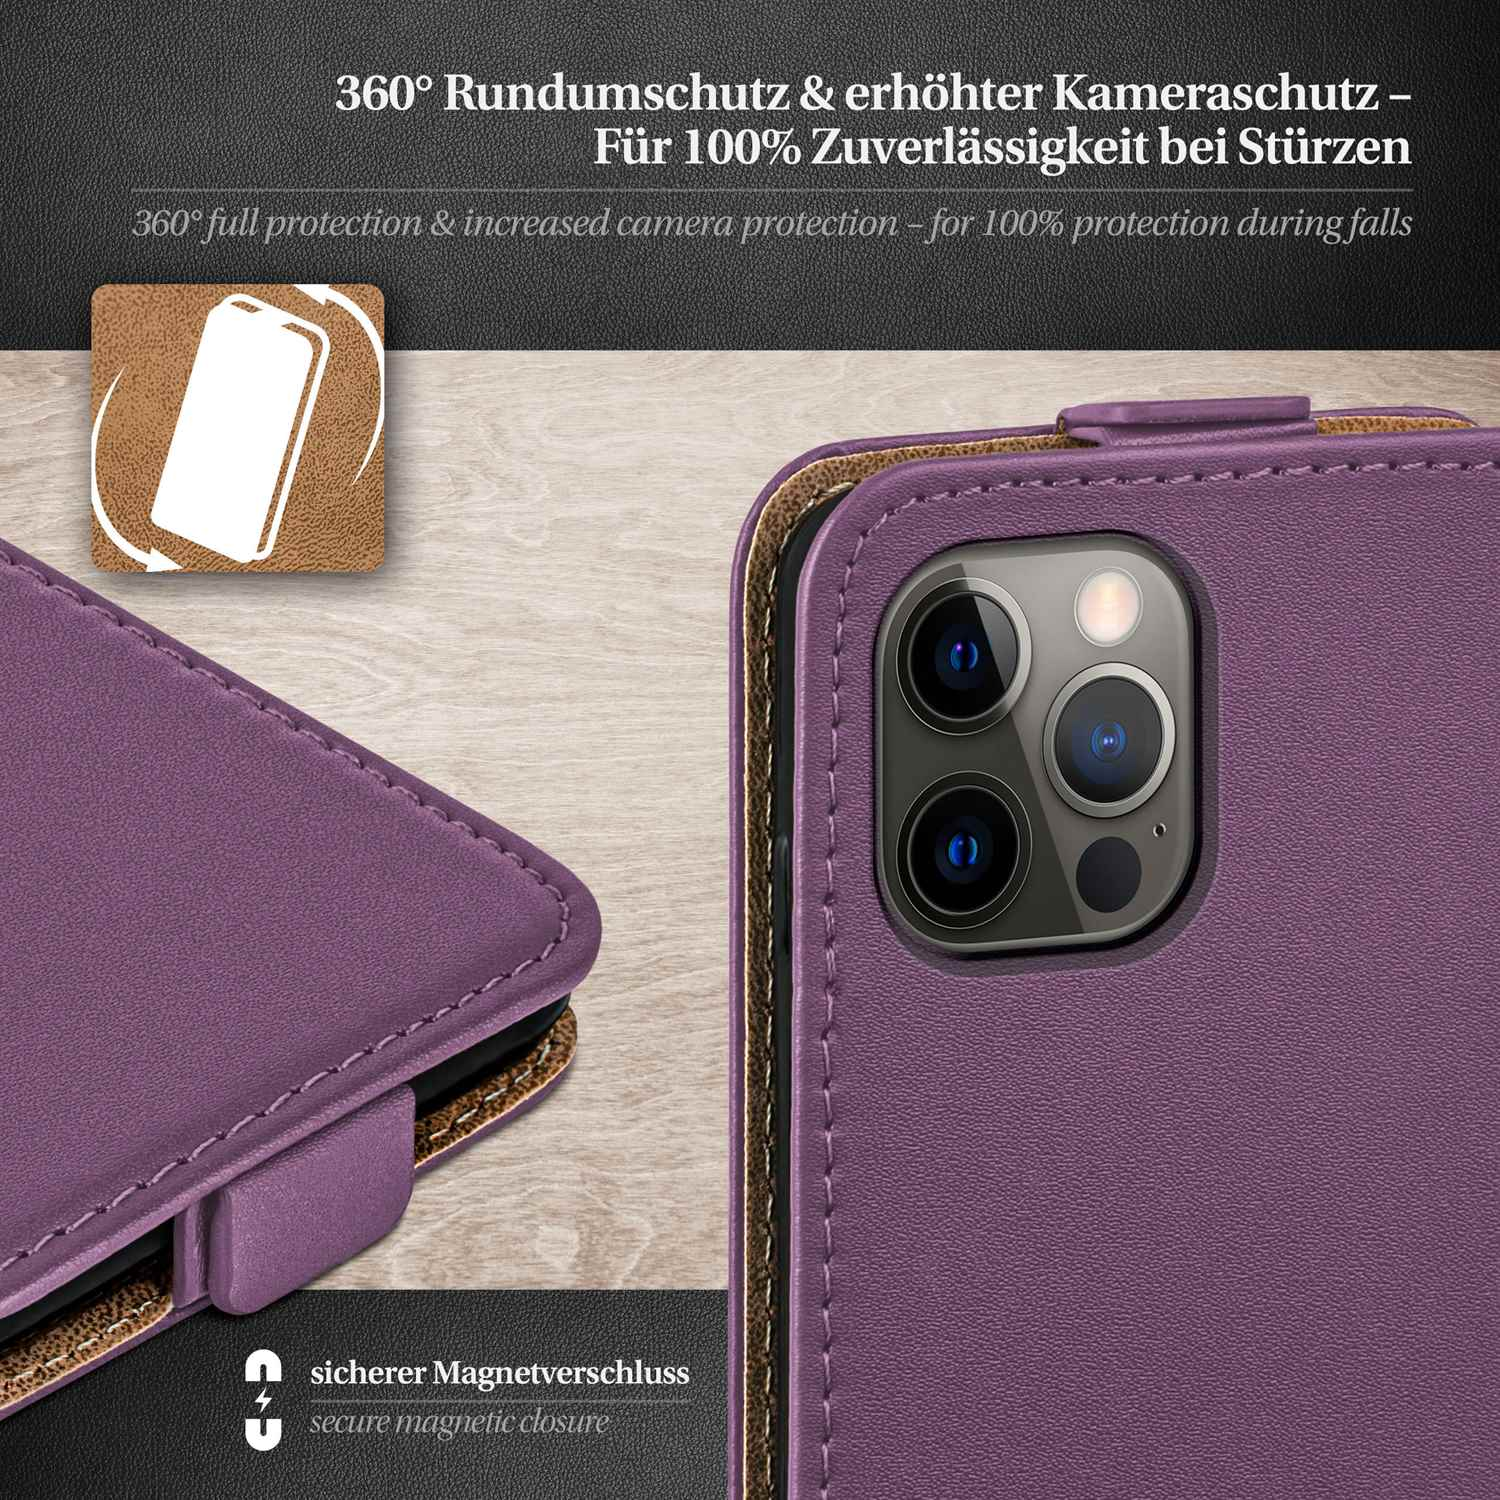 Case, Indigo-Violet Cover, Pro, Flip iPhone Flip MOEX Apple, 12